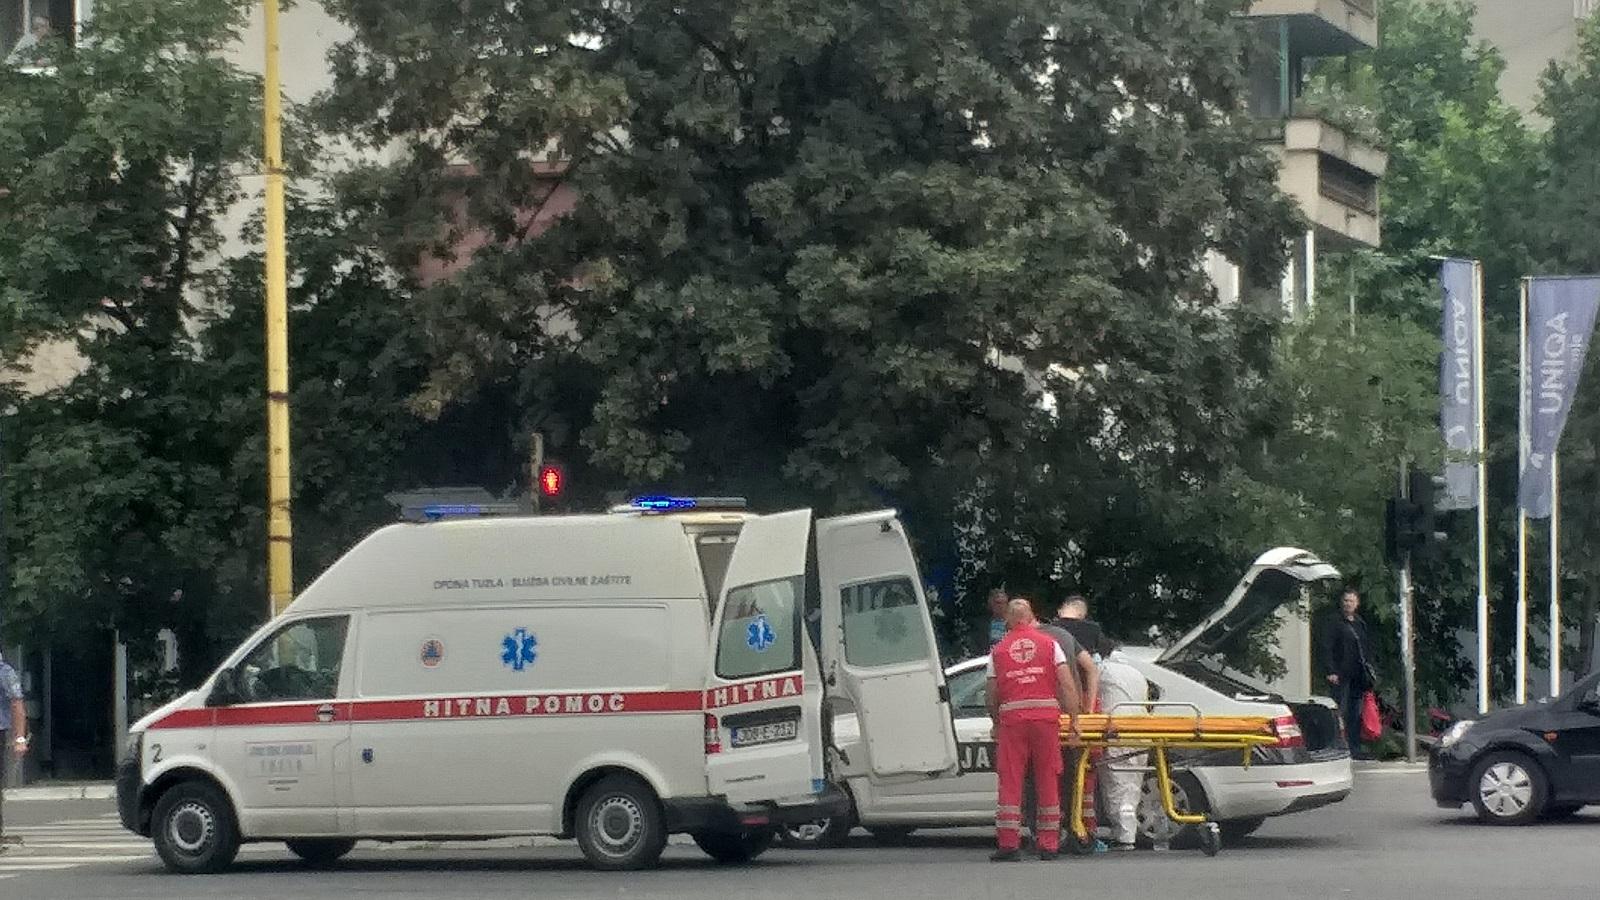 Hitna pomoć i policija na mjestu nesreće - Avaz